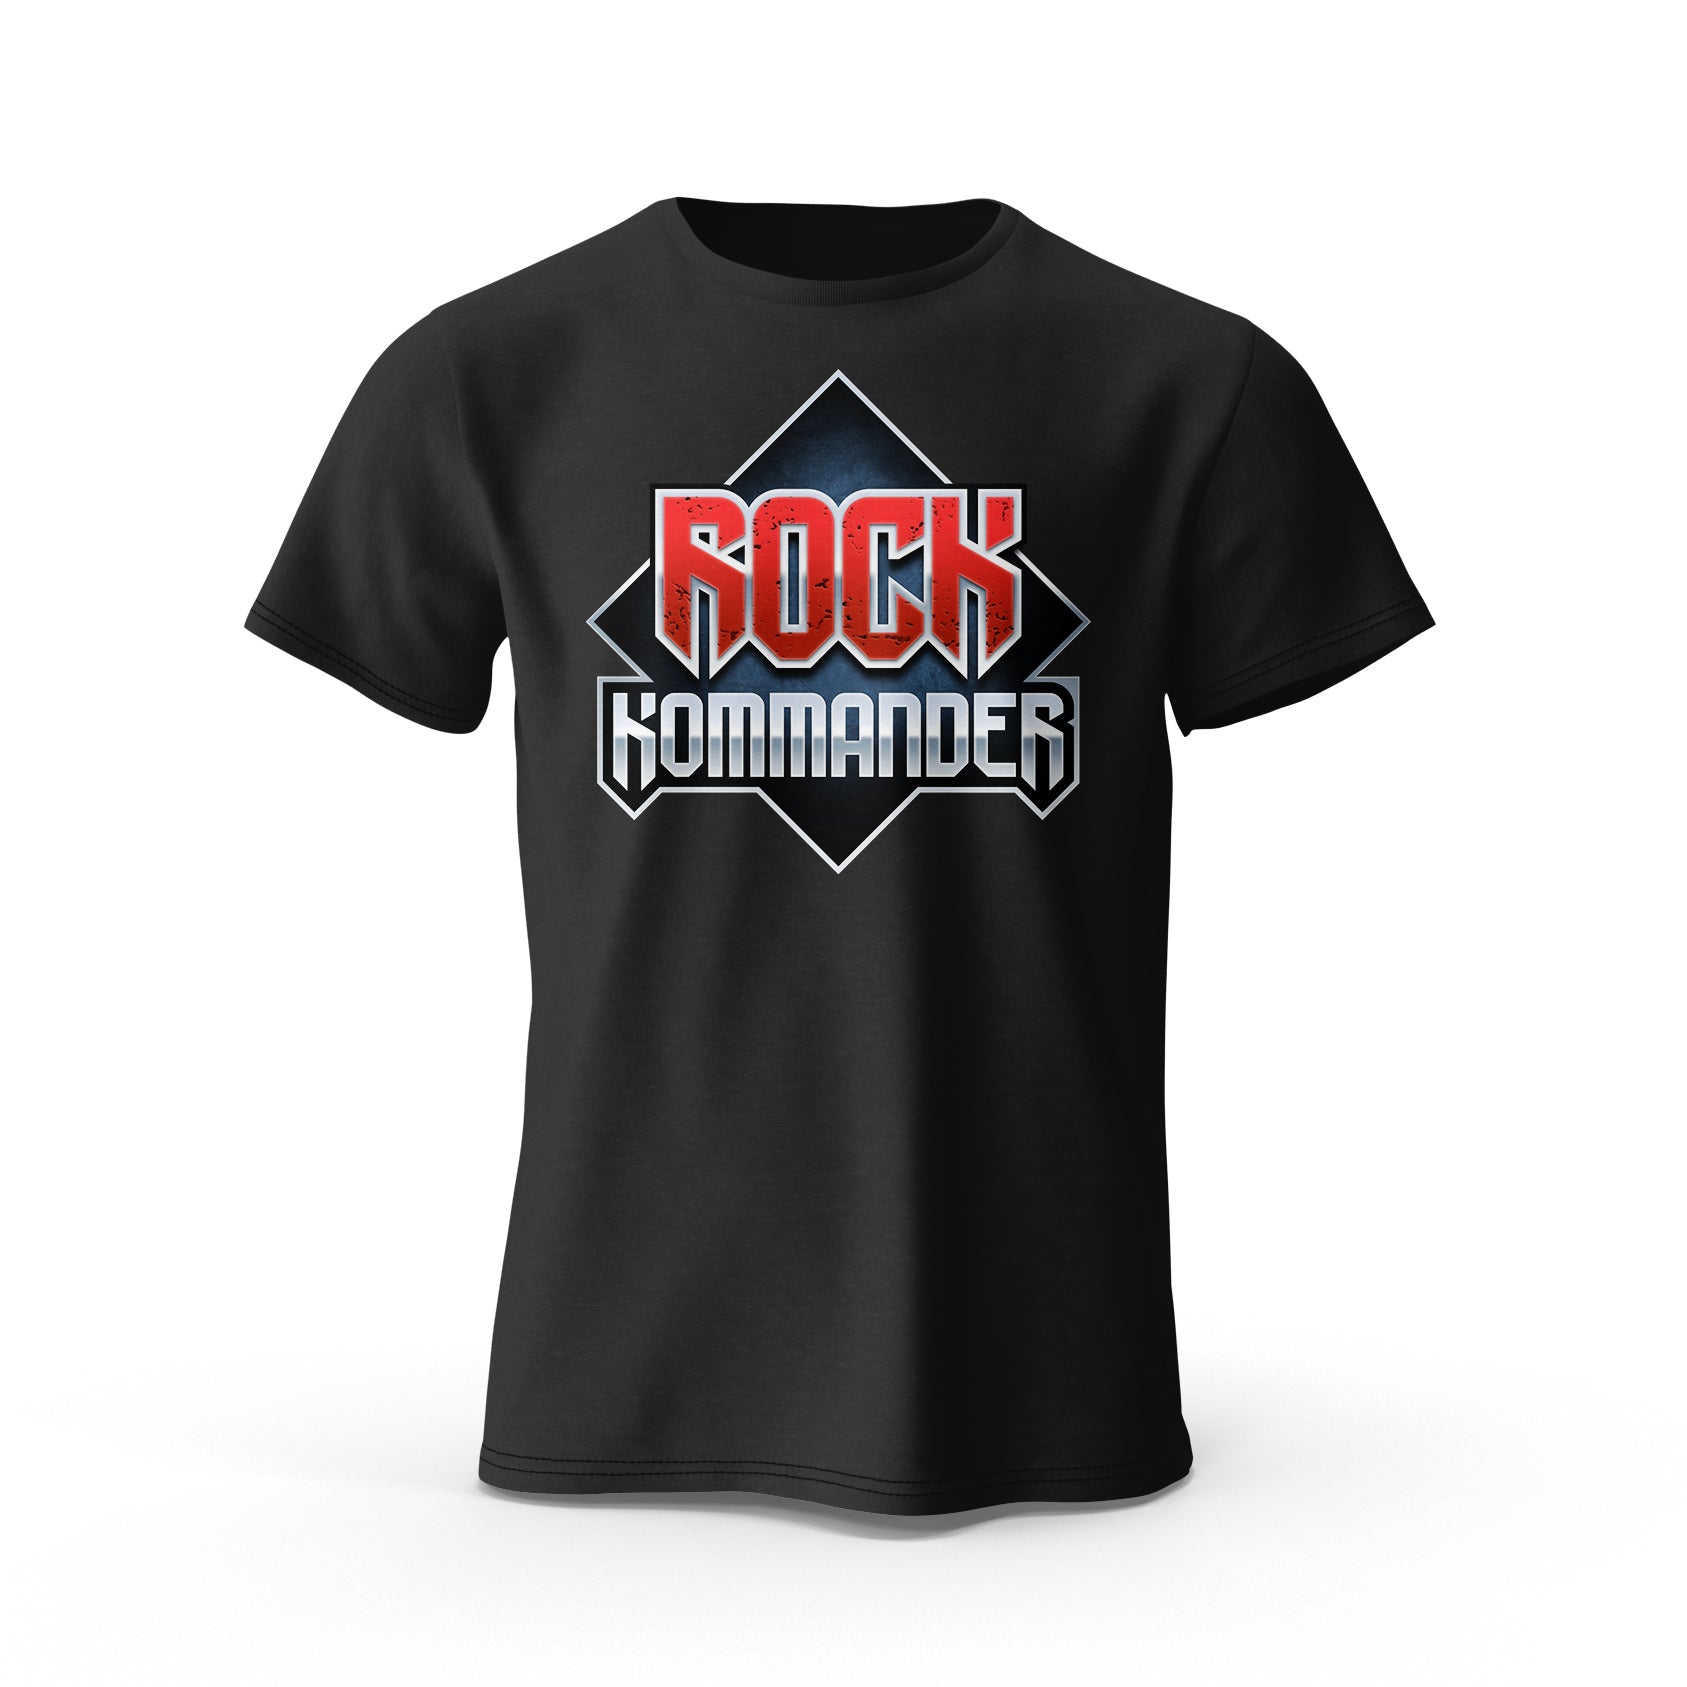 Rock Kommander T-Shirt from Rock Kommander 